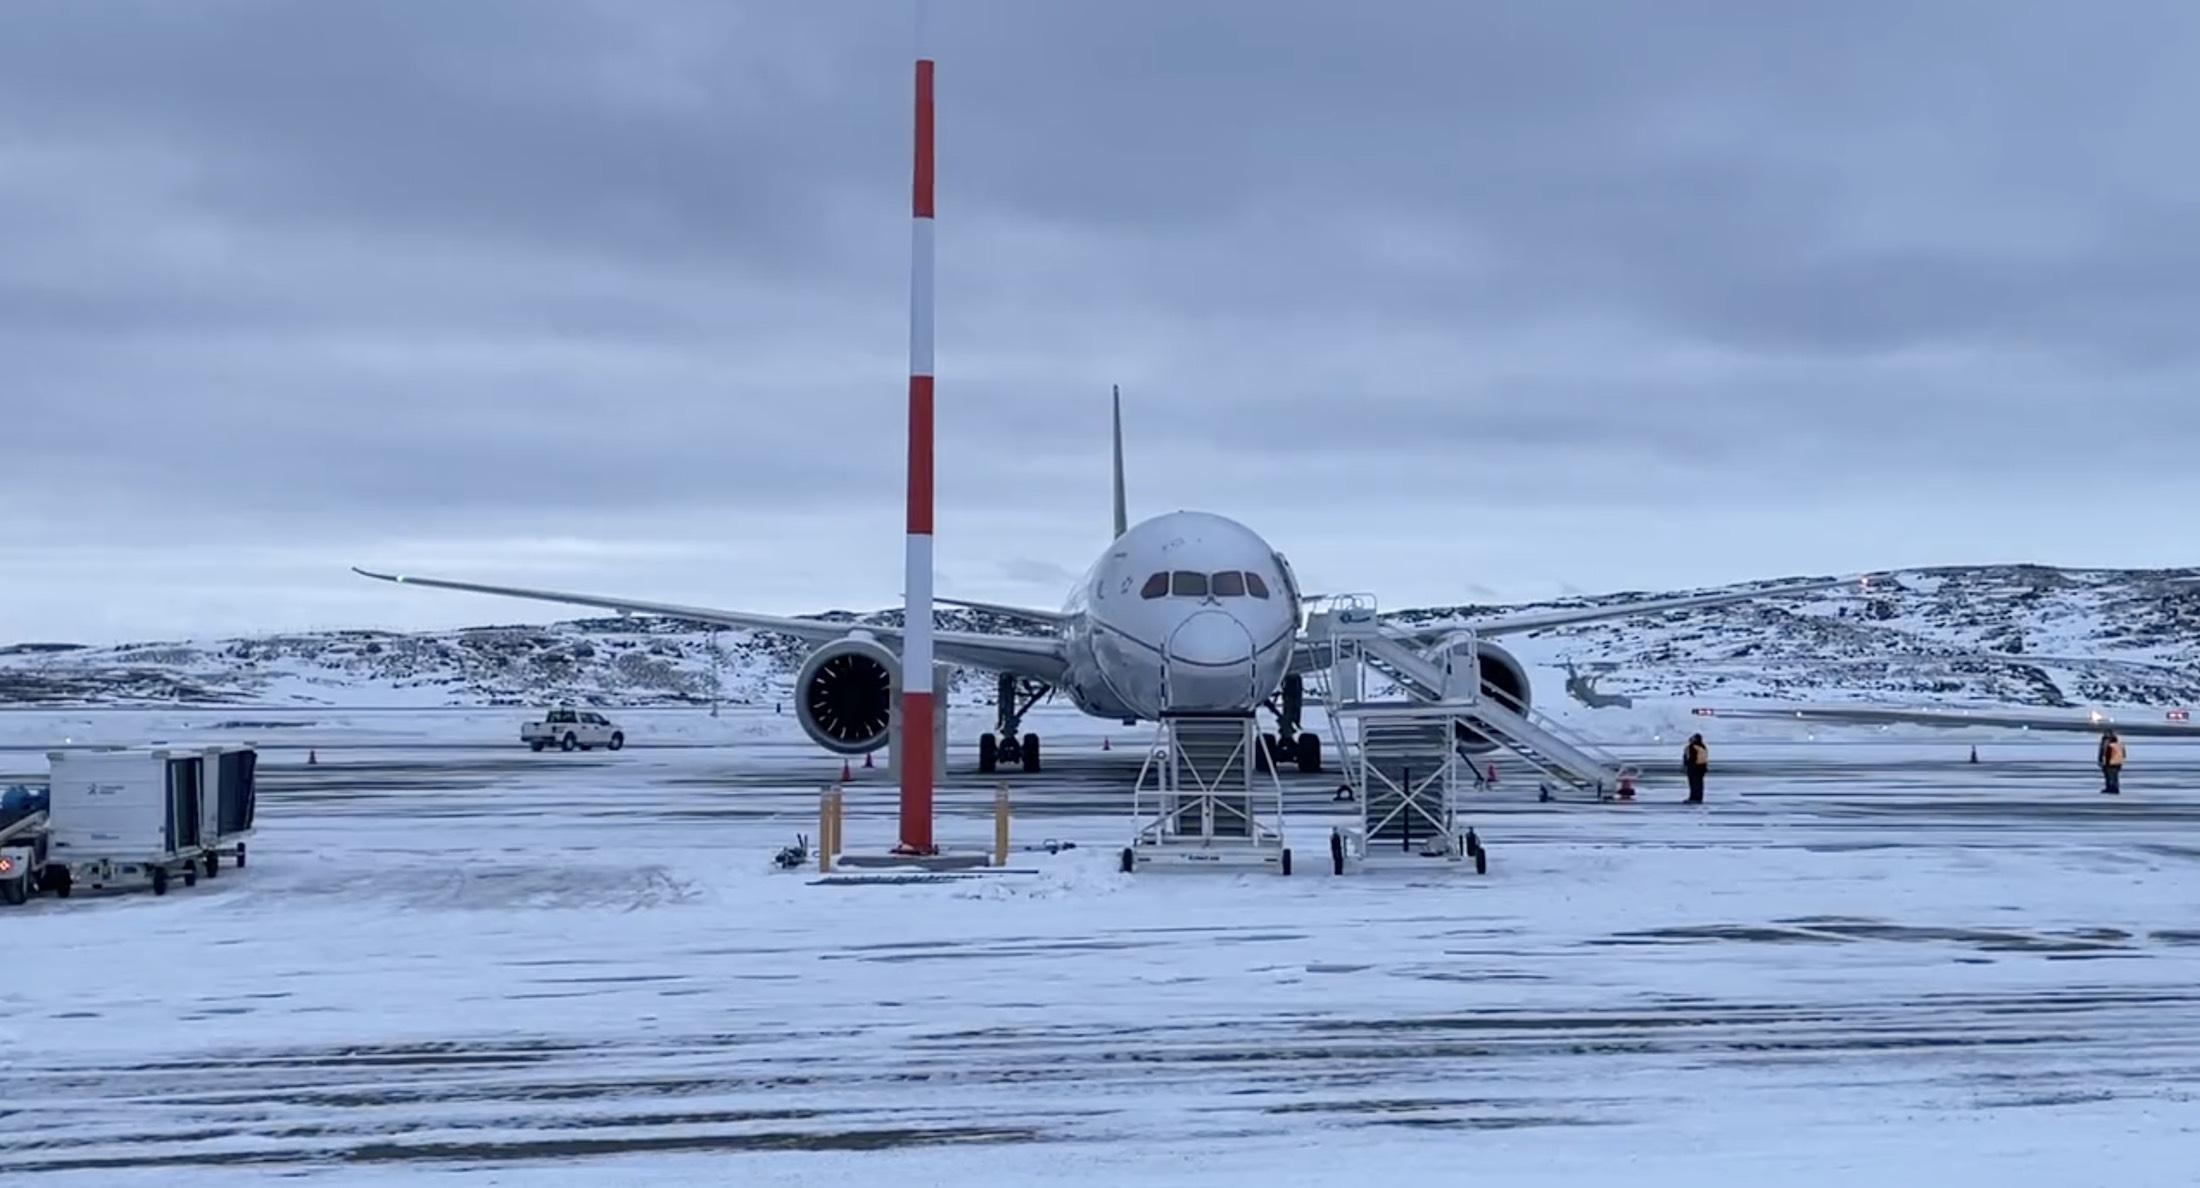 a plane on a snowy runway